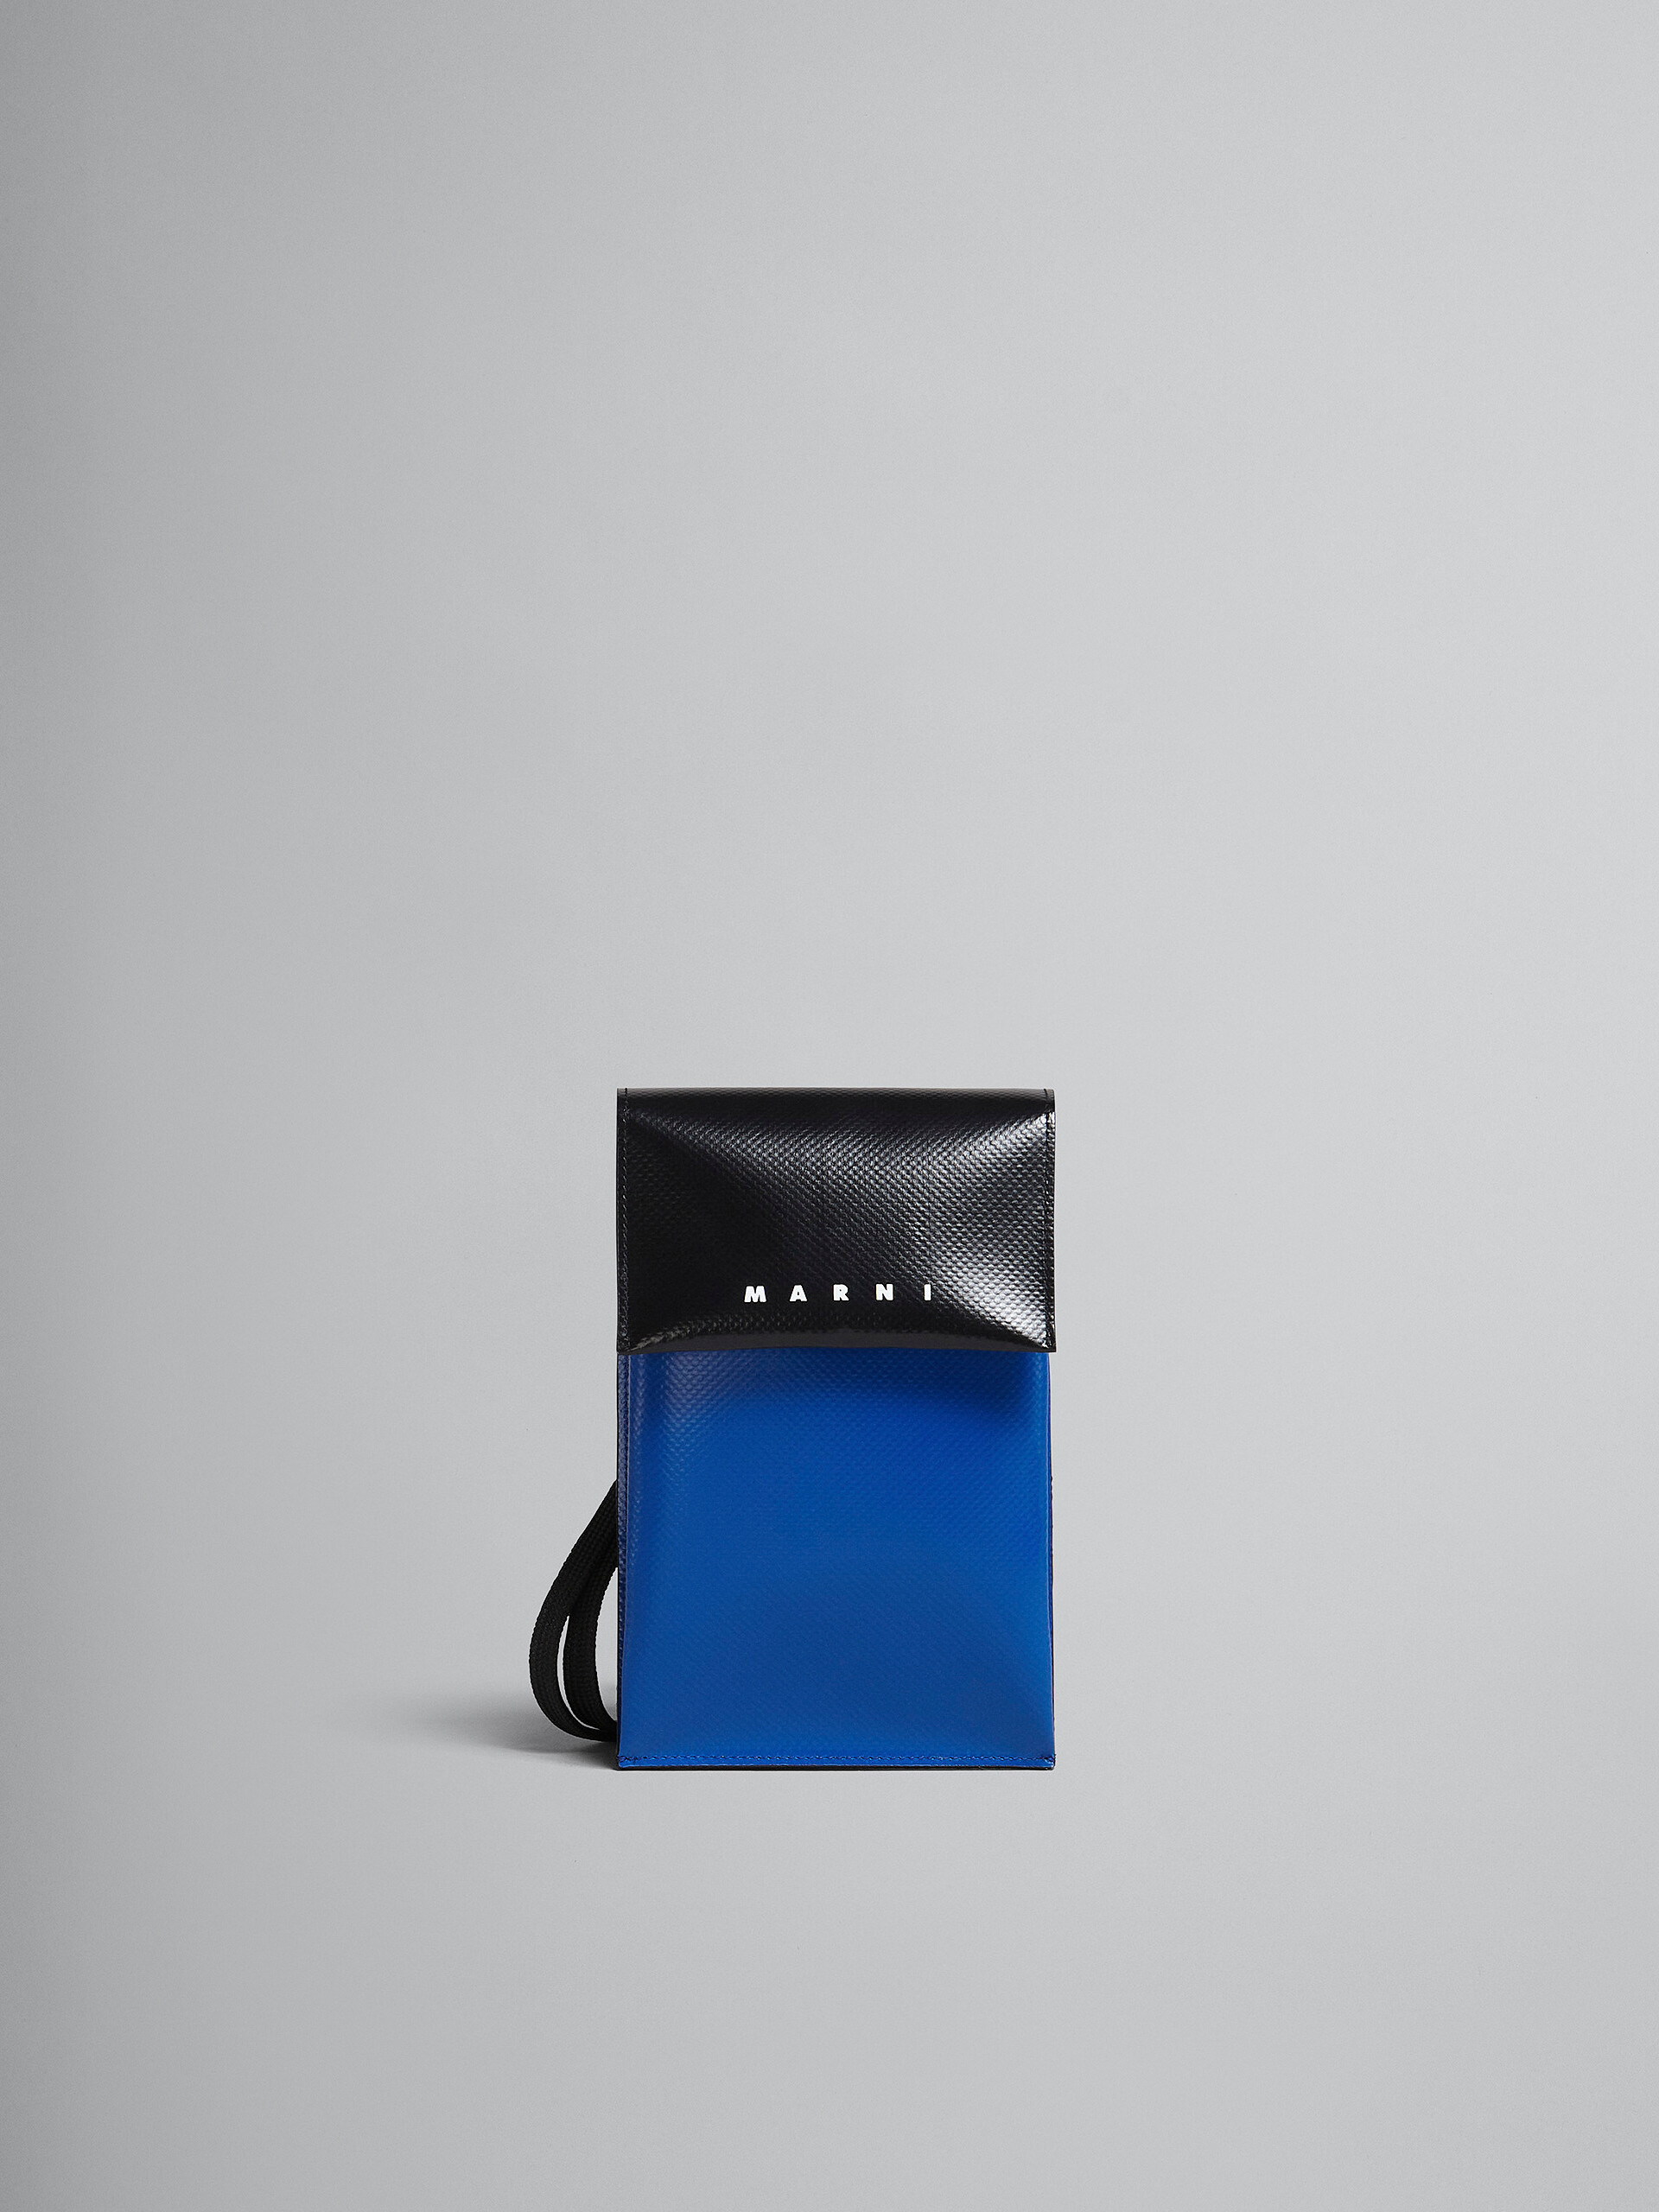 Smartphone-Hülle Tribeca in Blau und Schwarz - Brieftaschen & Kleinlederwaren - Image 1